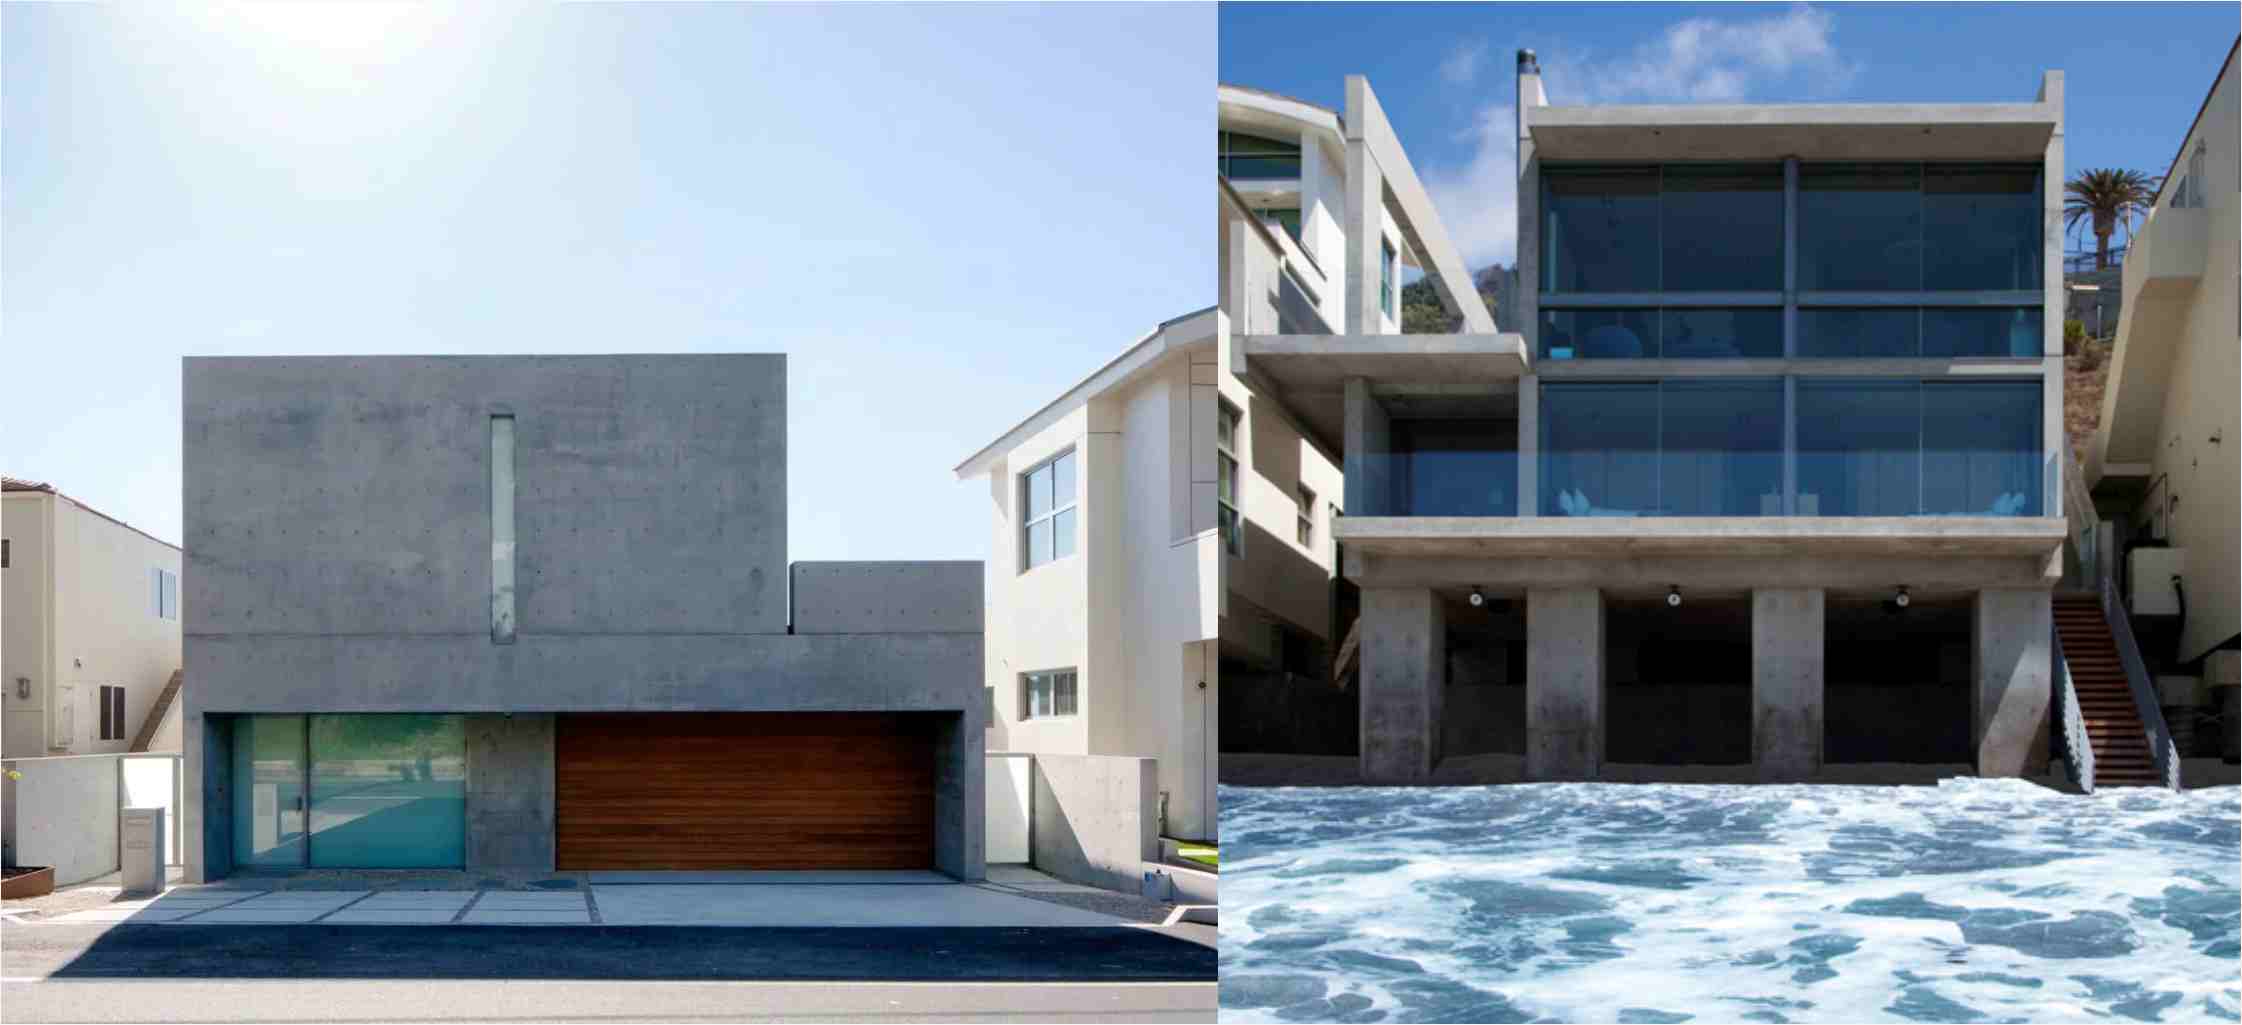 칸예가 700억을 주고 구입했다는 로스앤젤레스의 저택, 창문 앞이 바로 바다라고 해요.